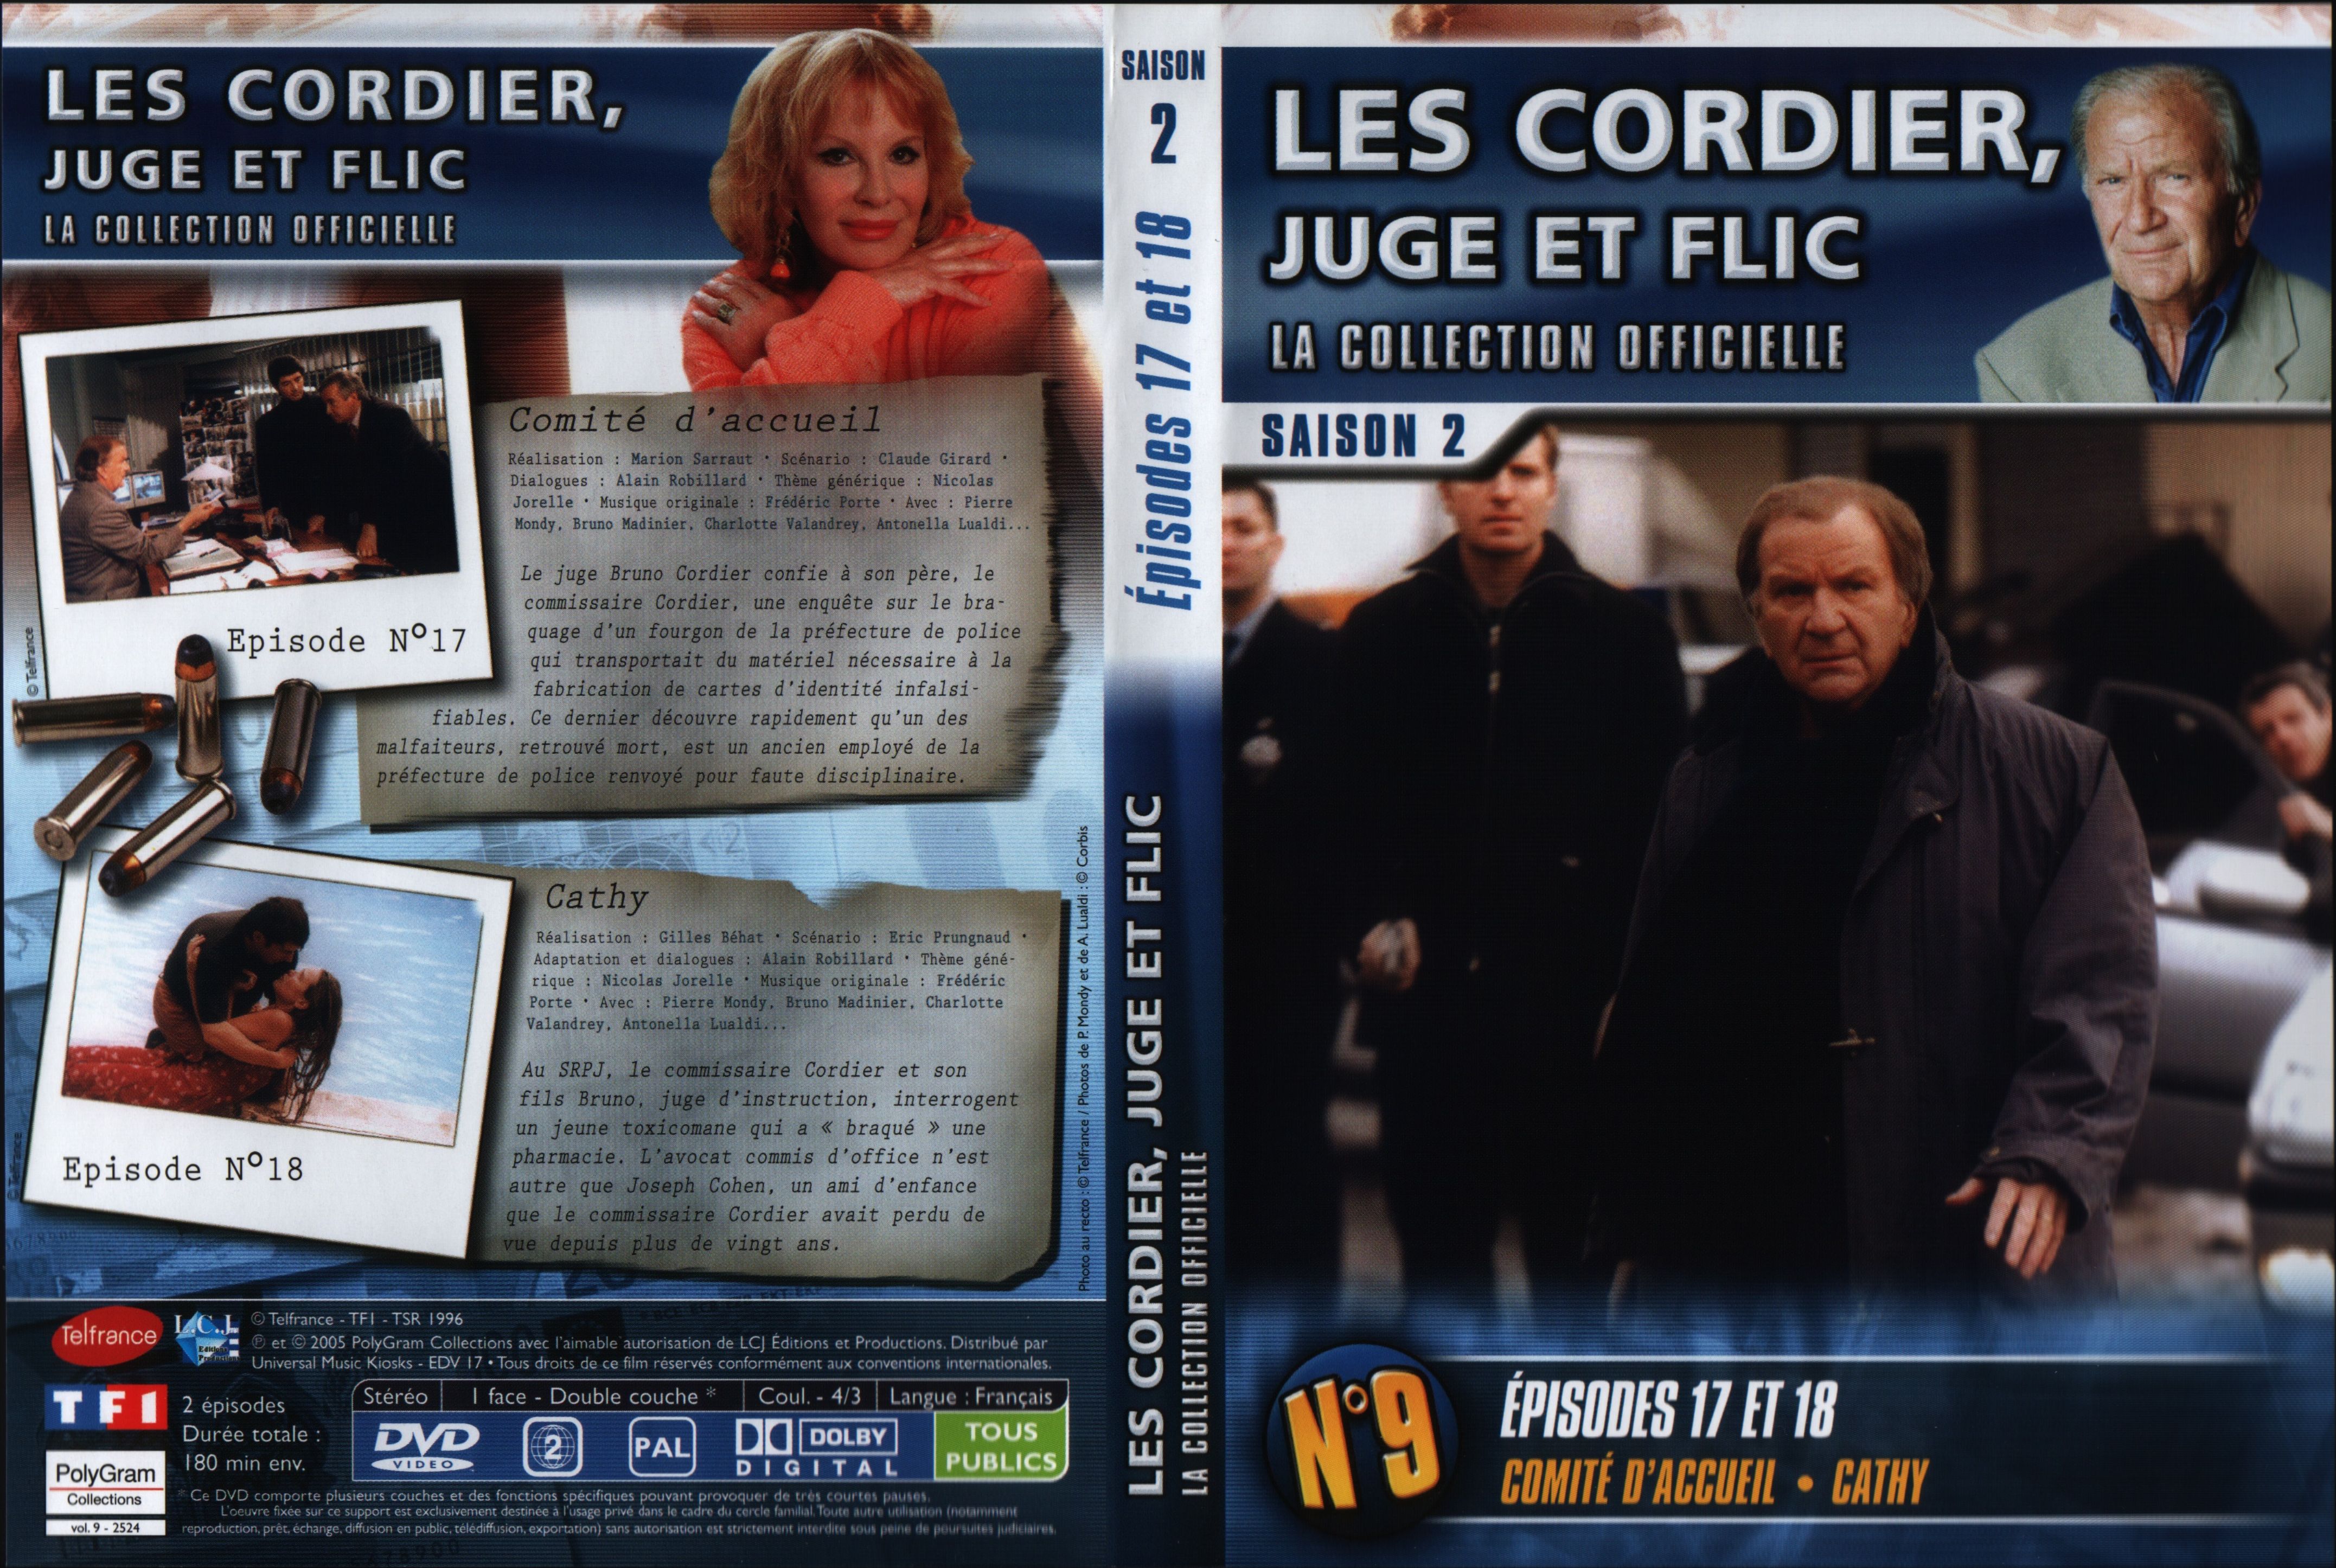 Jaquette DVD Les cordier juge et flic Saison 2 vol 9